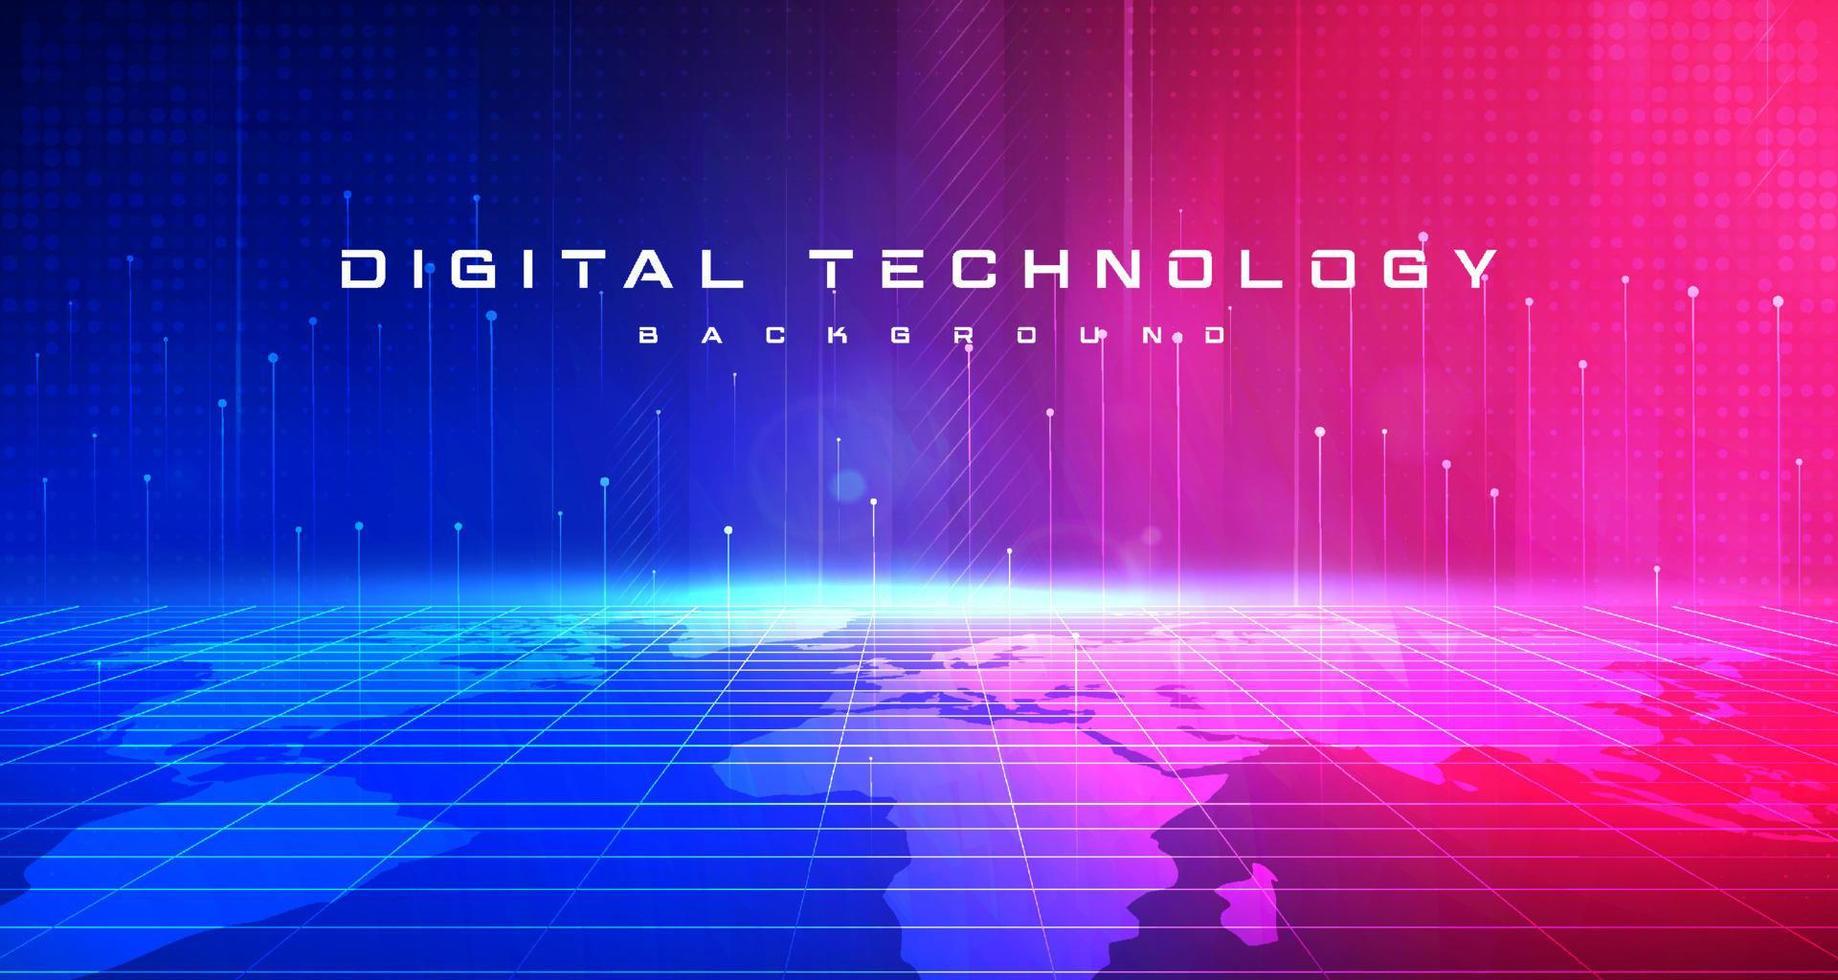 Digitaltechnik-Geschwindigkeit verbindet blauen rosa Hintergrund, Cyber-Informationen, abstrakte Metaverse-Kommunikation, Innovation Future Meta Tech, Internet-Netzwerkverbindung, ai Big Data, Illustration 3d vektor